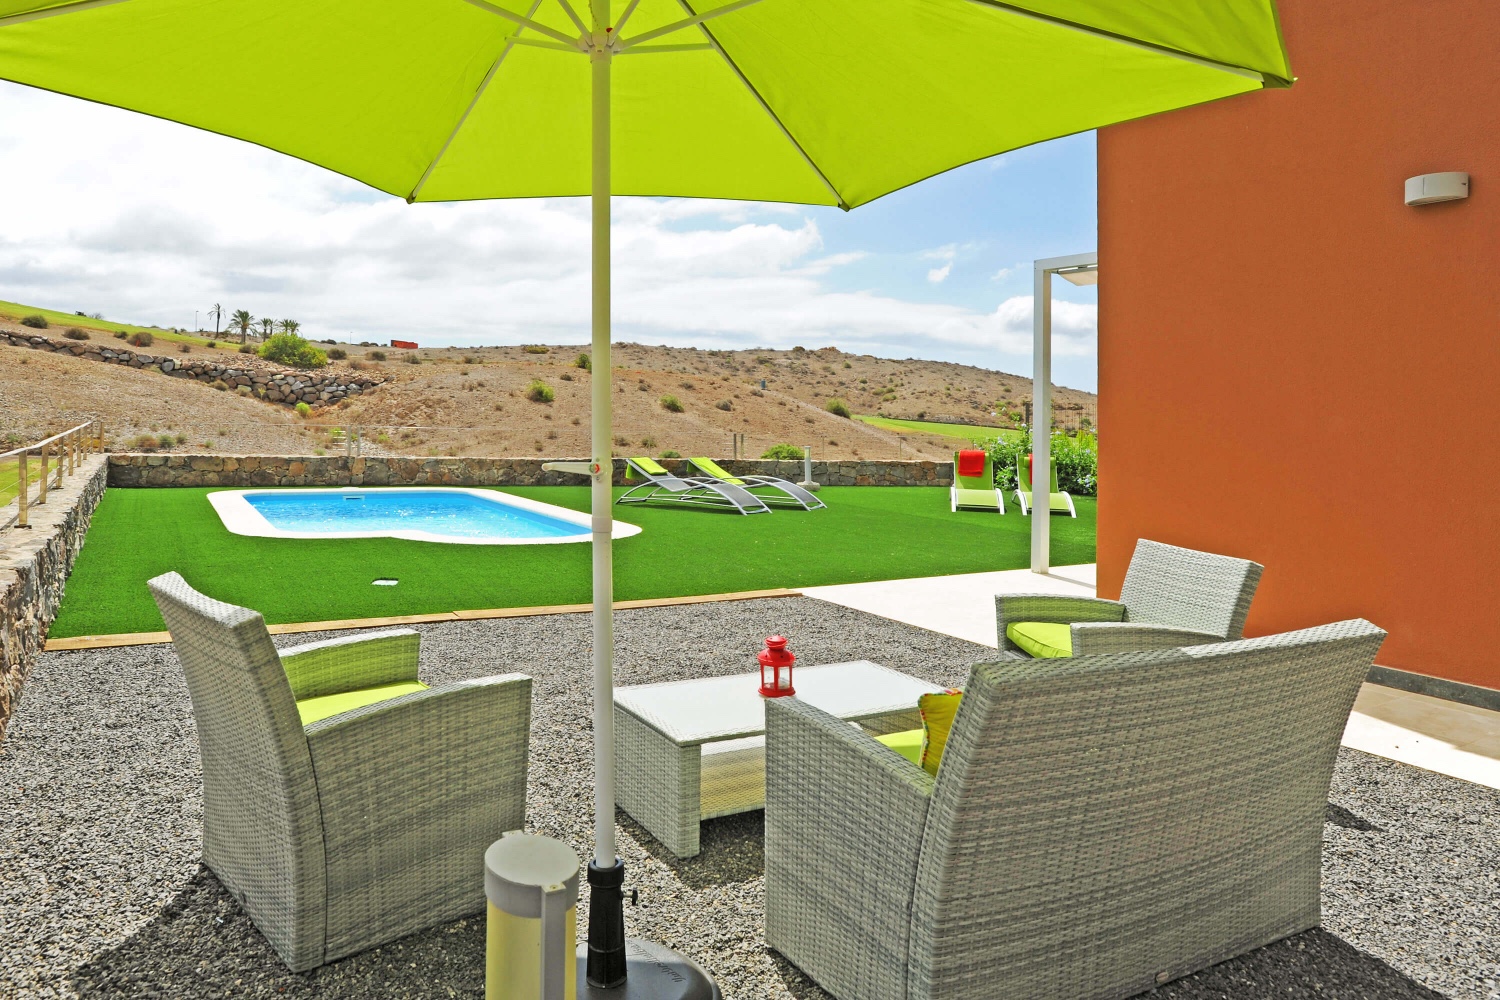 Casa con ampio spazio esterno con posti a sedere, piscina privata e posizione privilegiata sulla prima linea del campo da golf